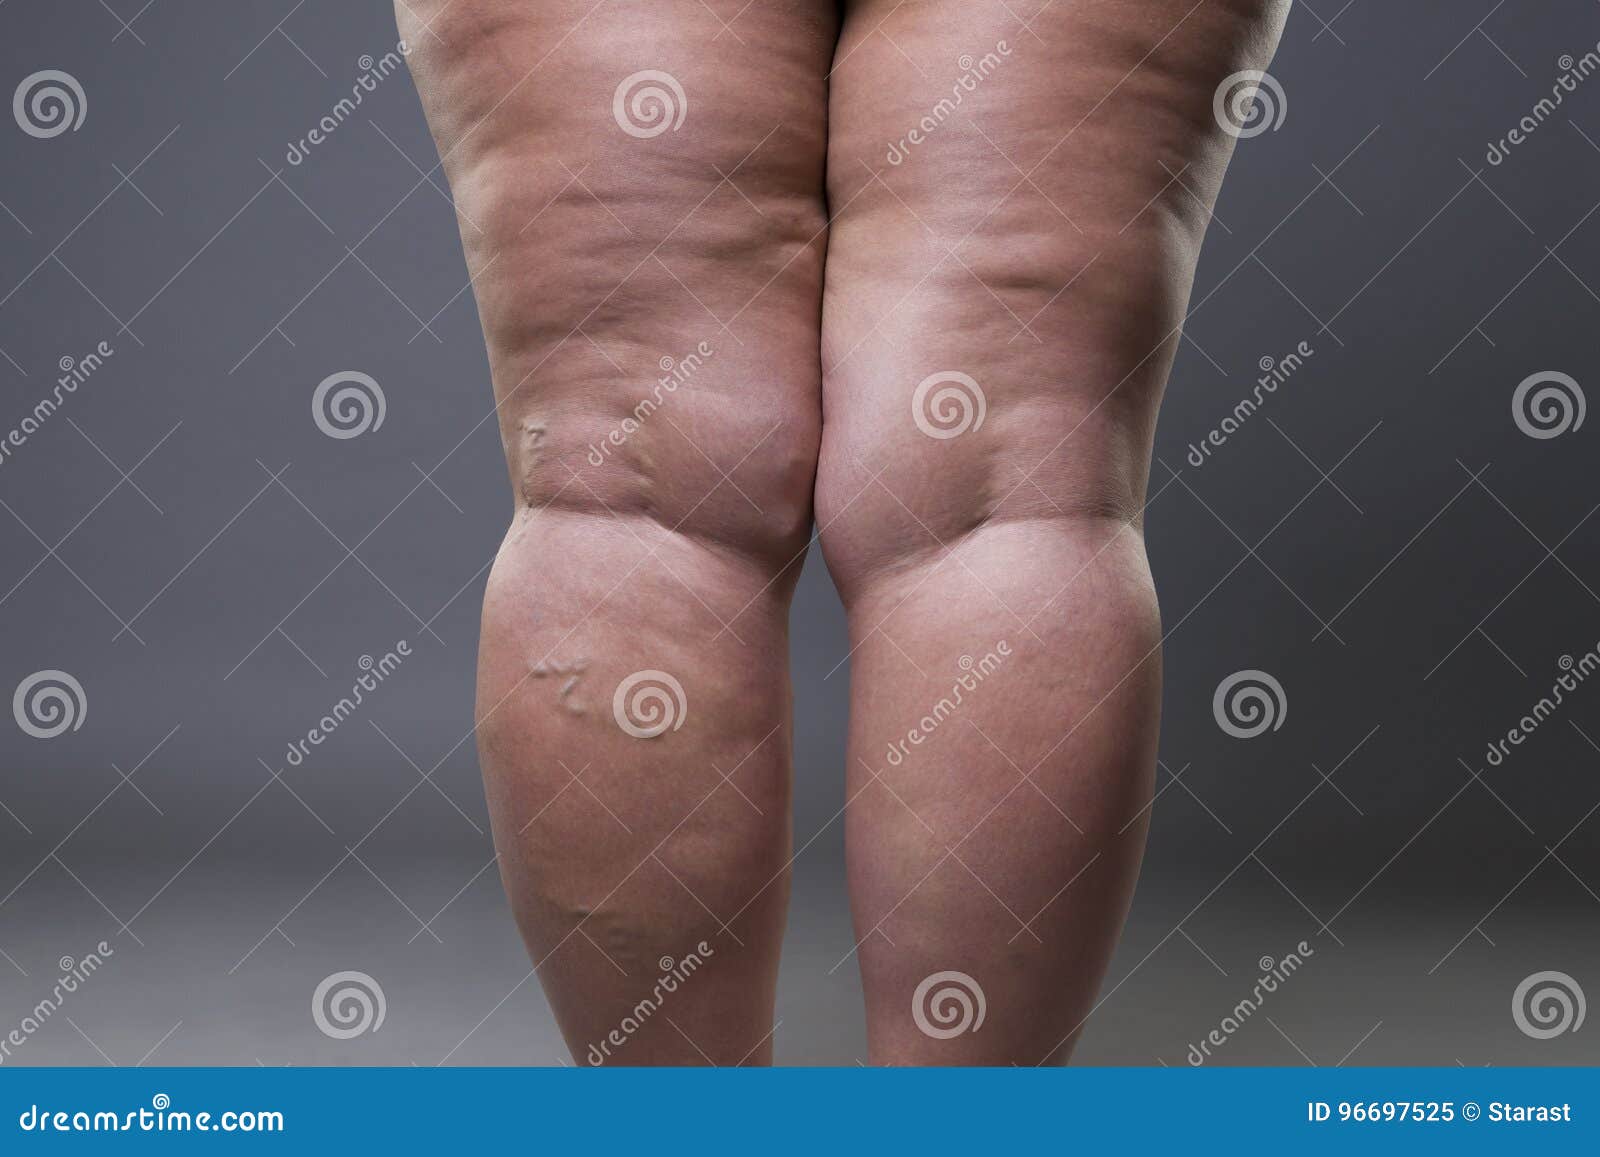 varicose veins closeup, fat female cellulite legs